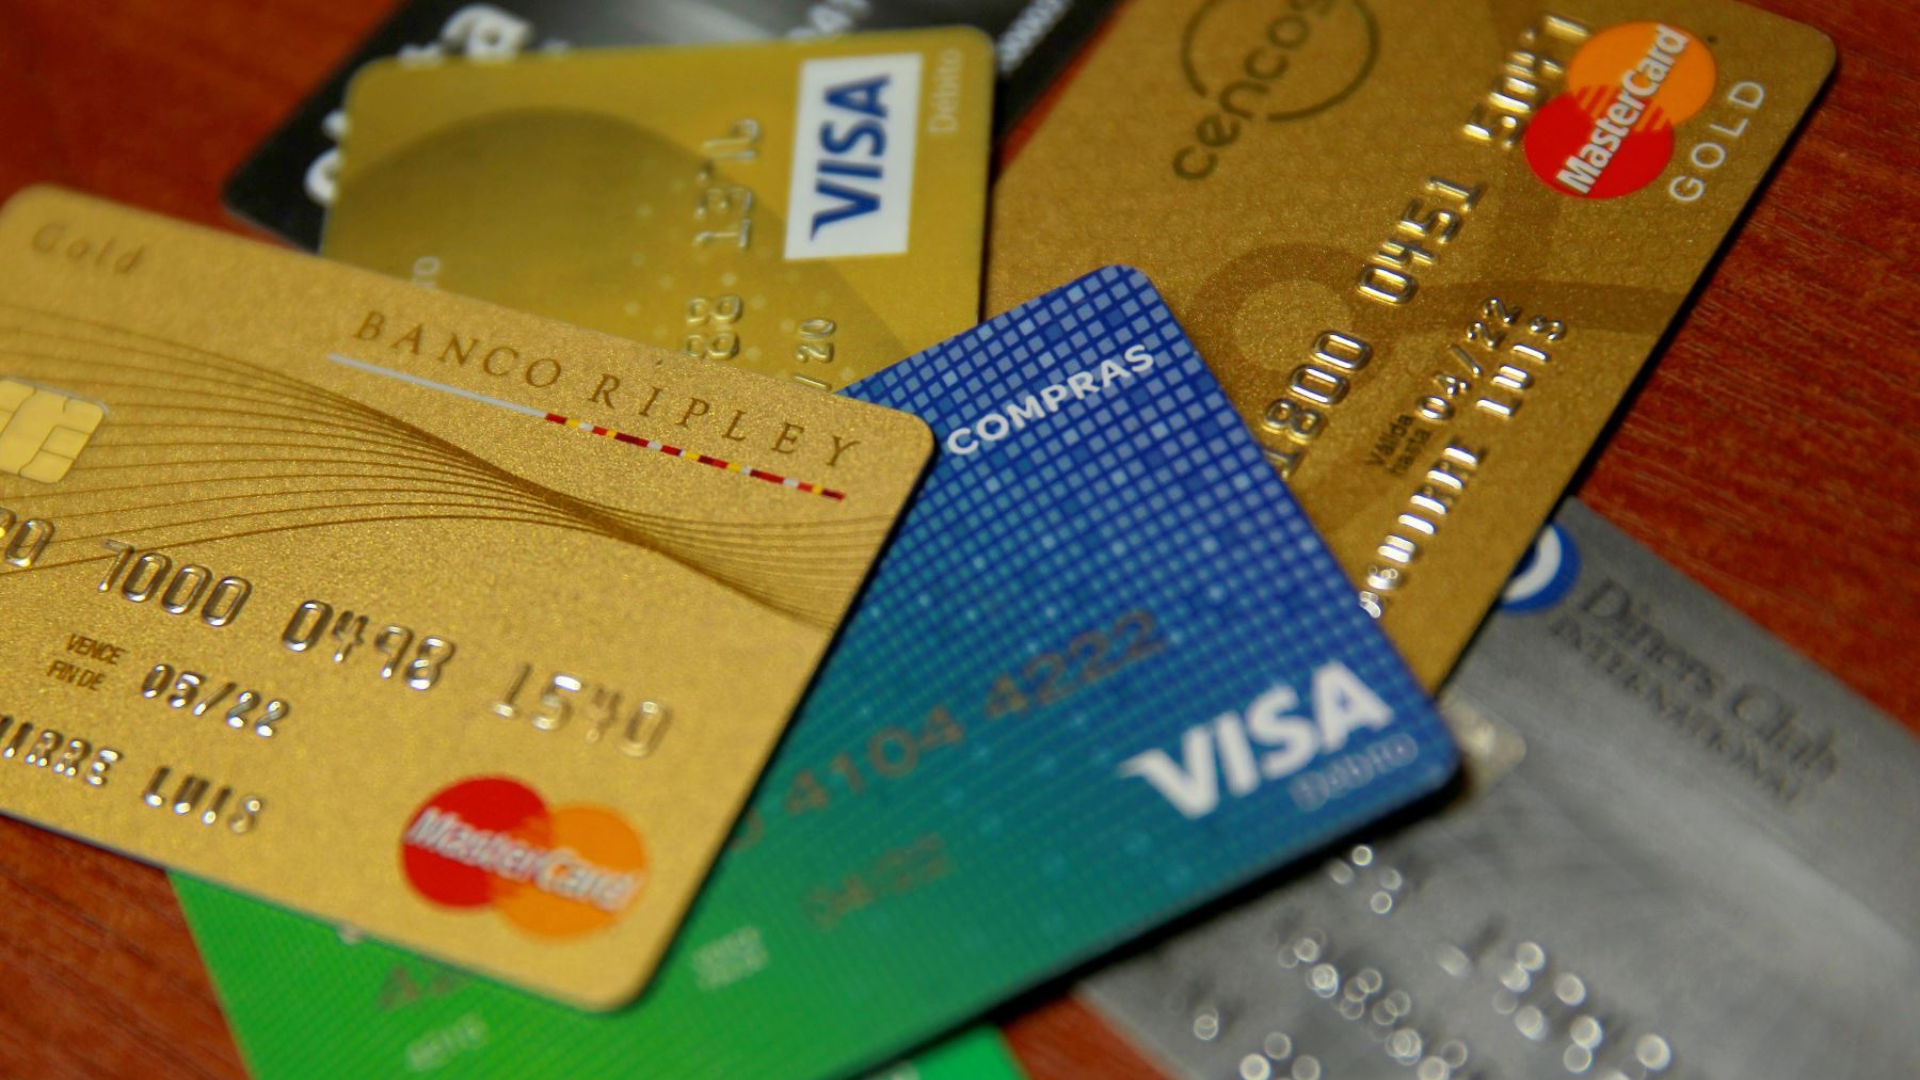 Tarjetas de crédito y débito.
Foto: Andina